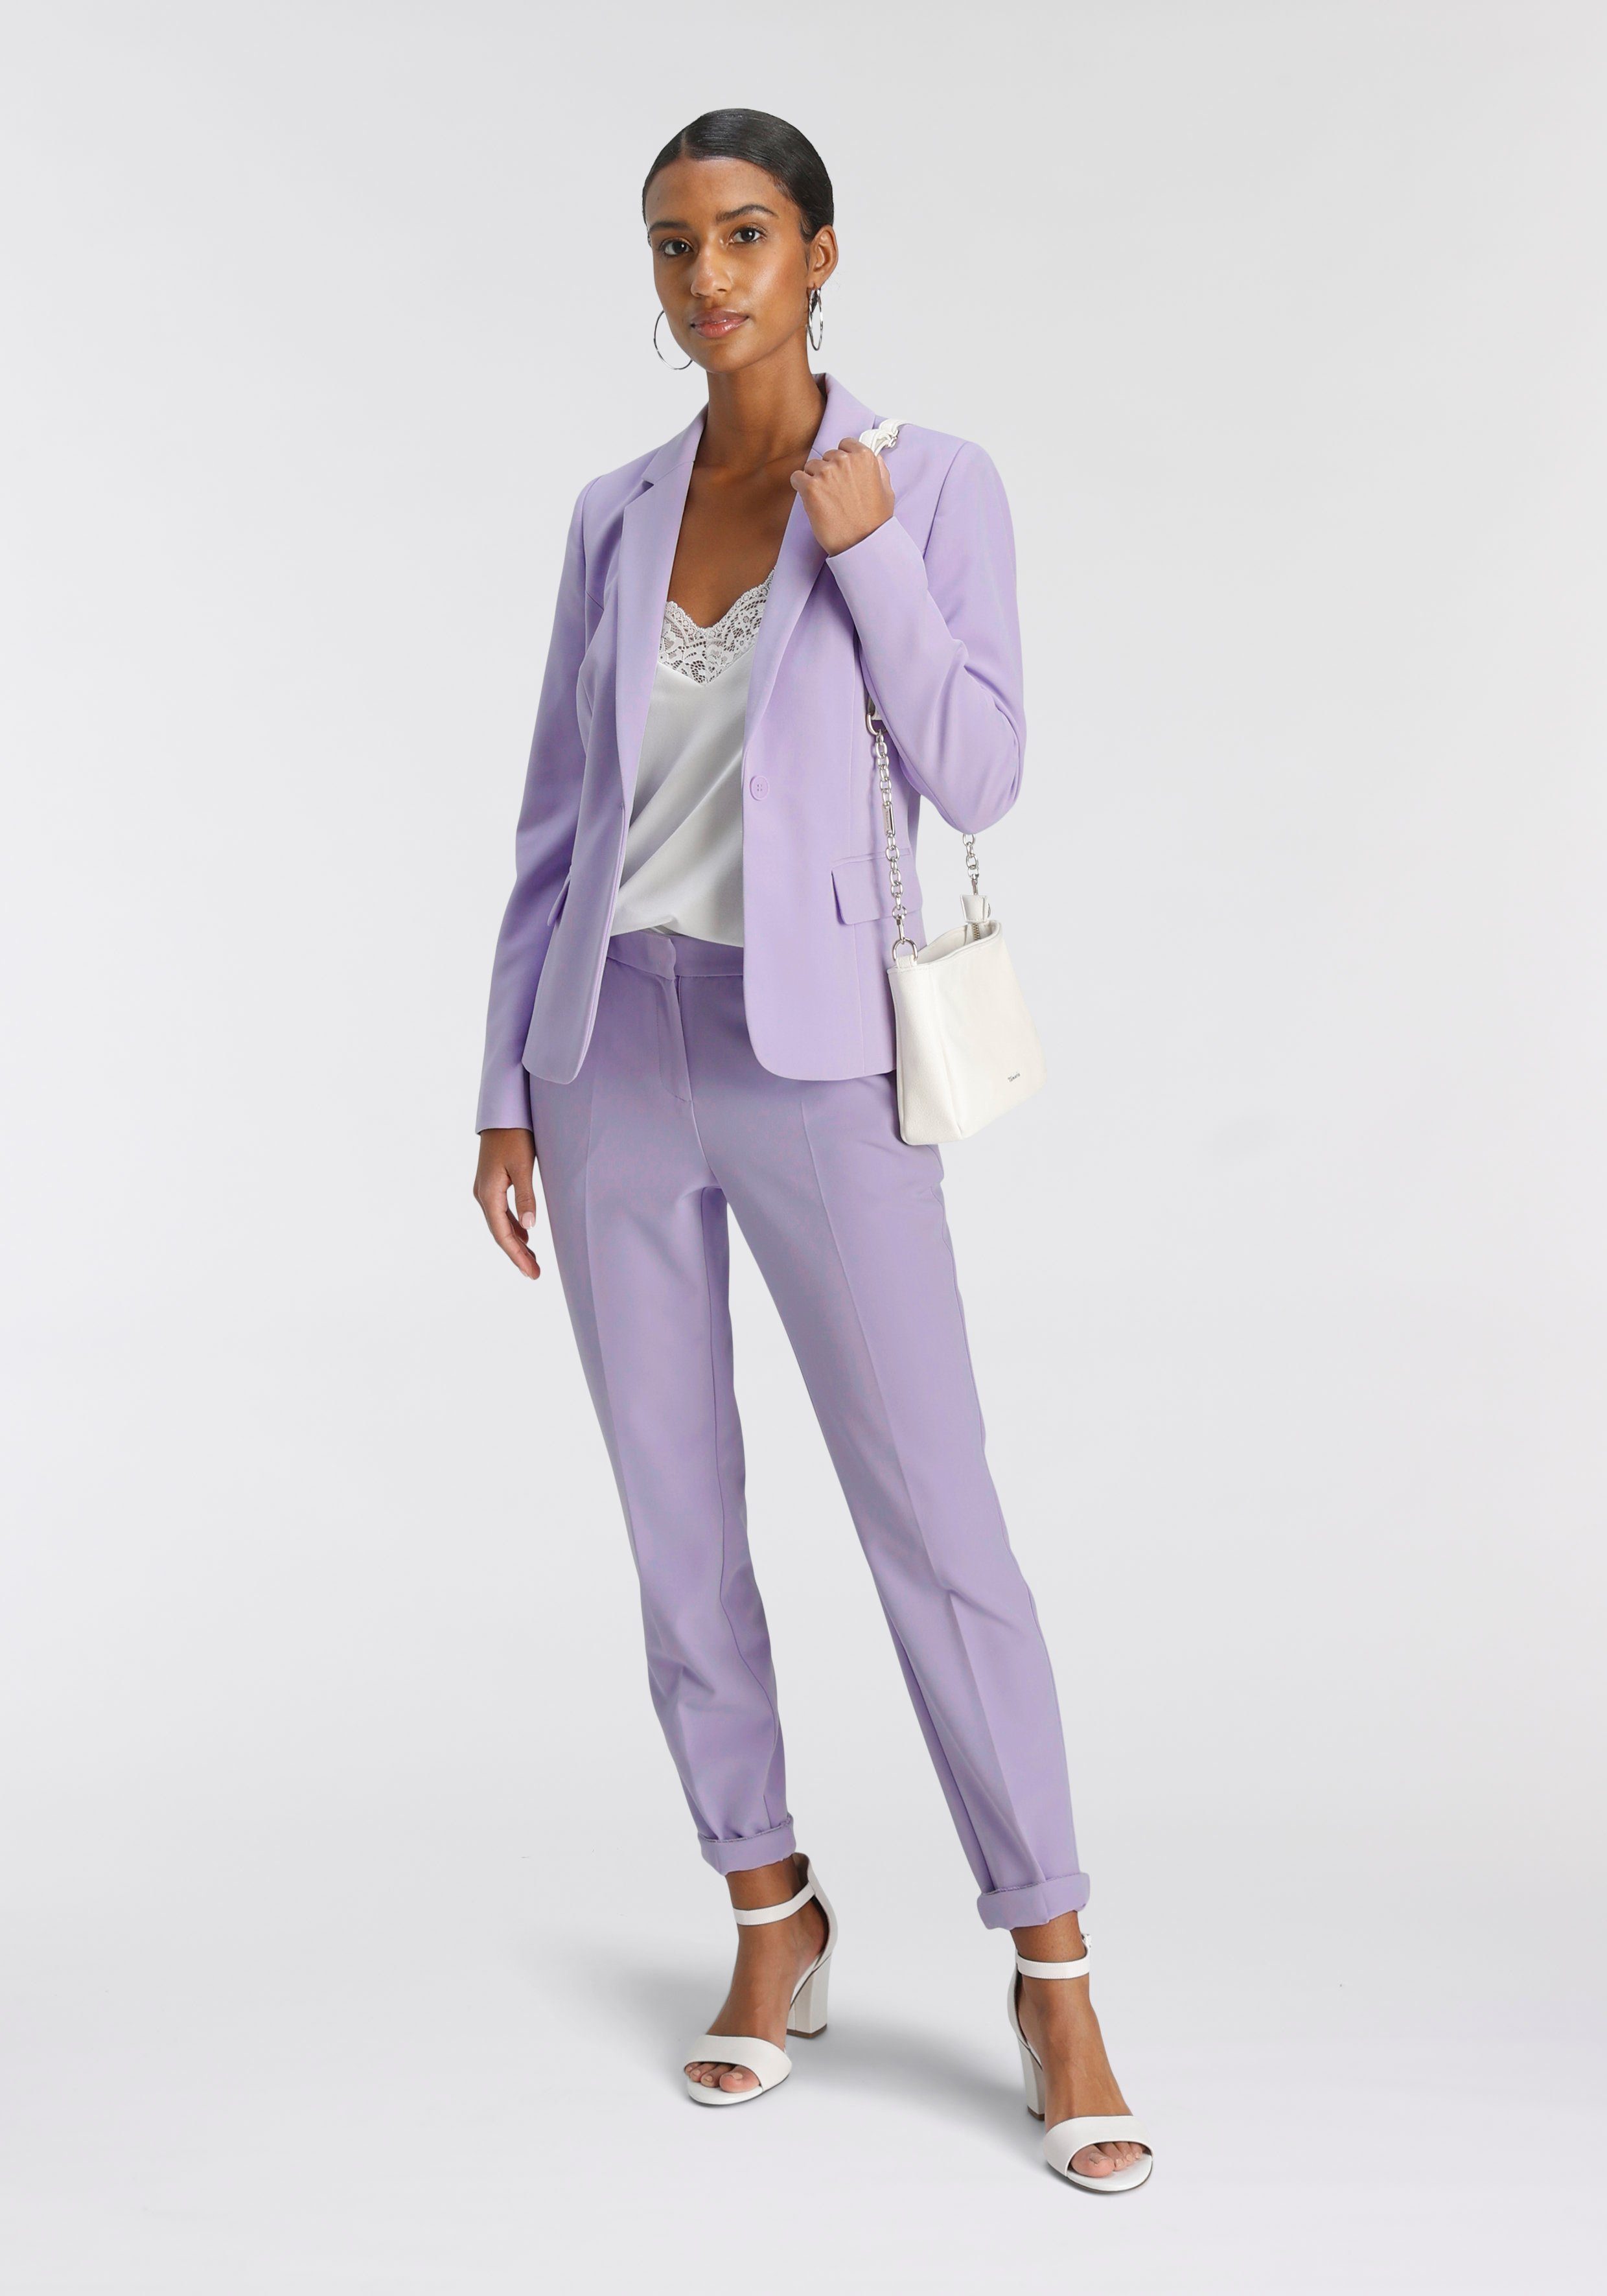 Tamaris Anzughose in flieder Material) (Hose aus nachhaltigem Trendfarben